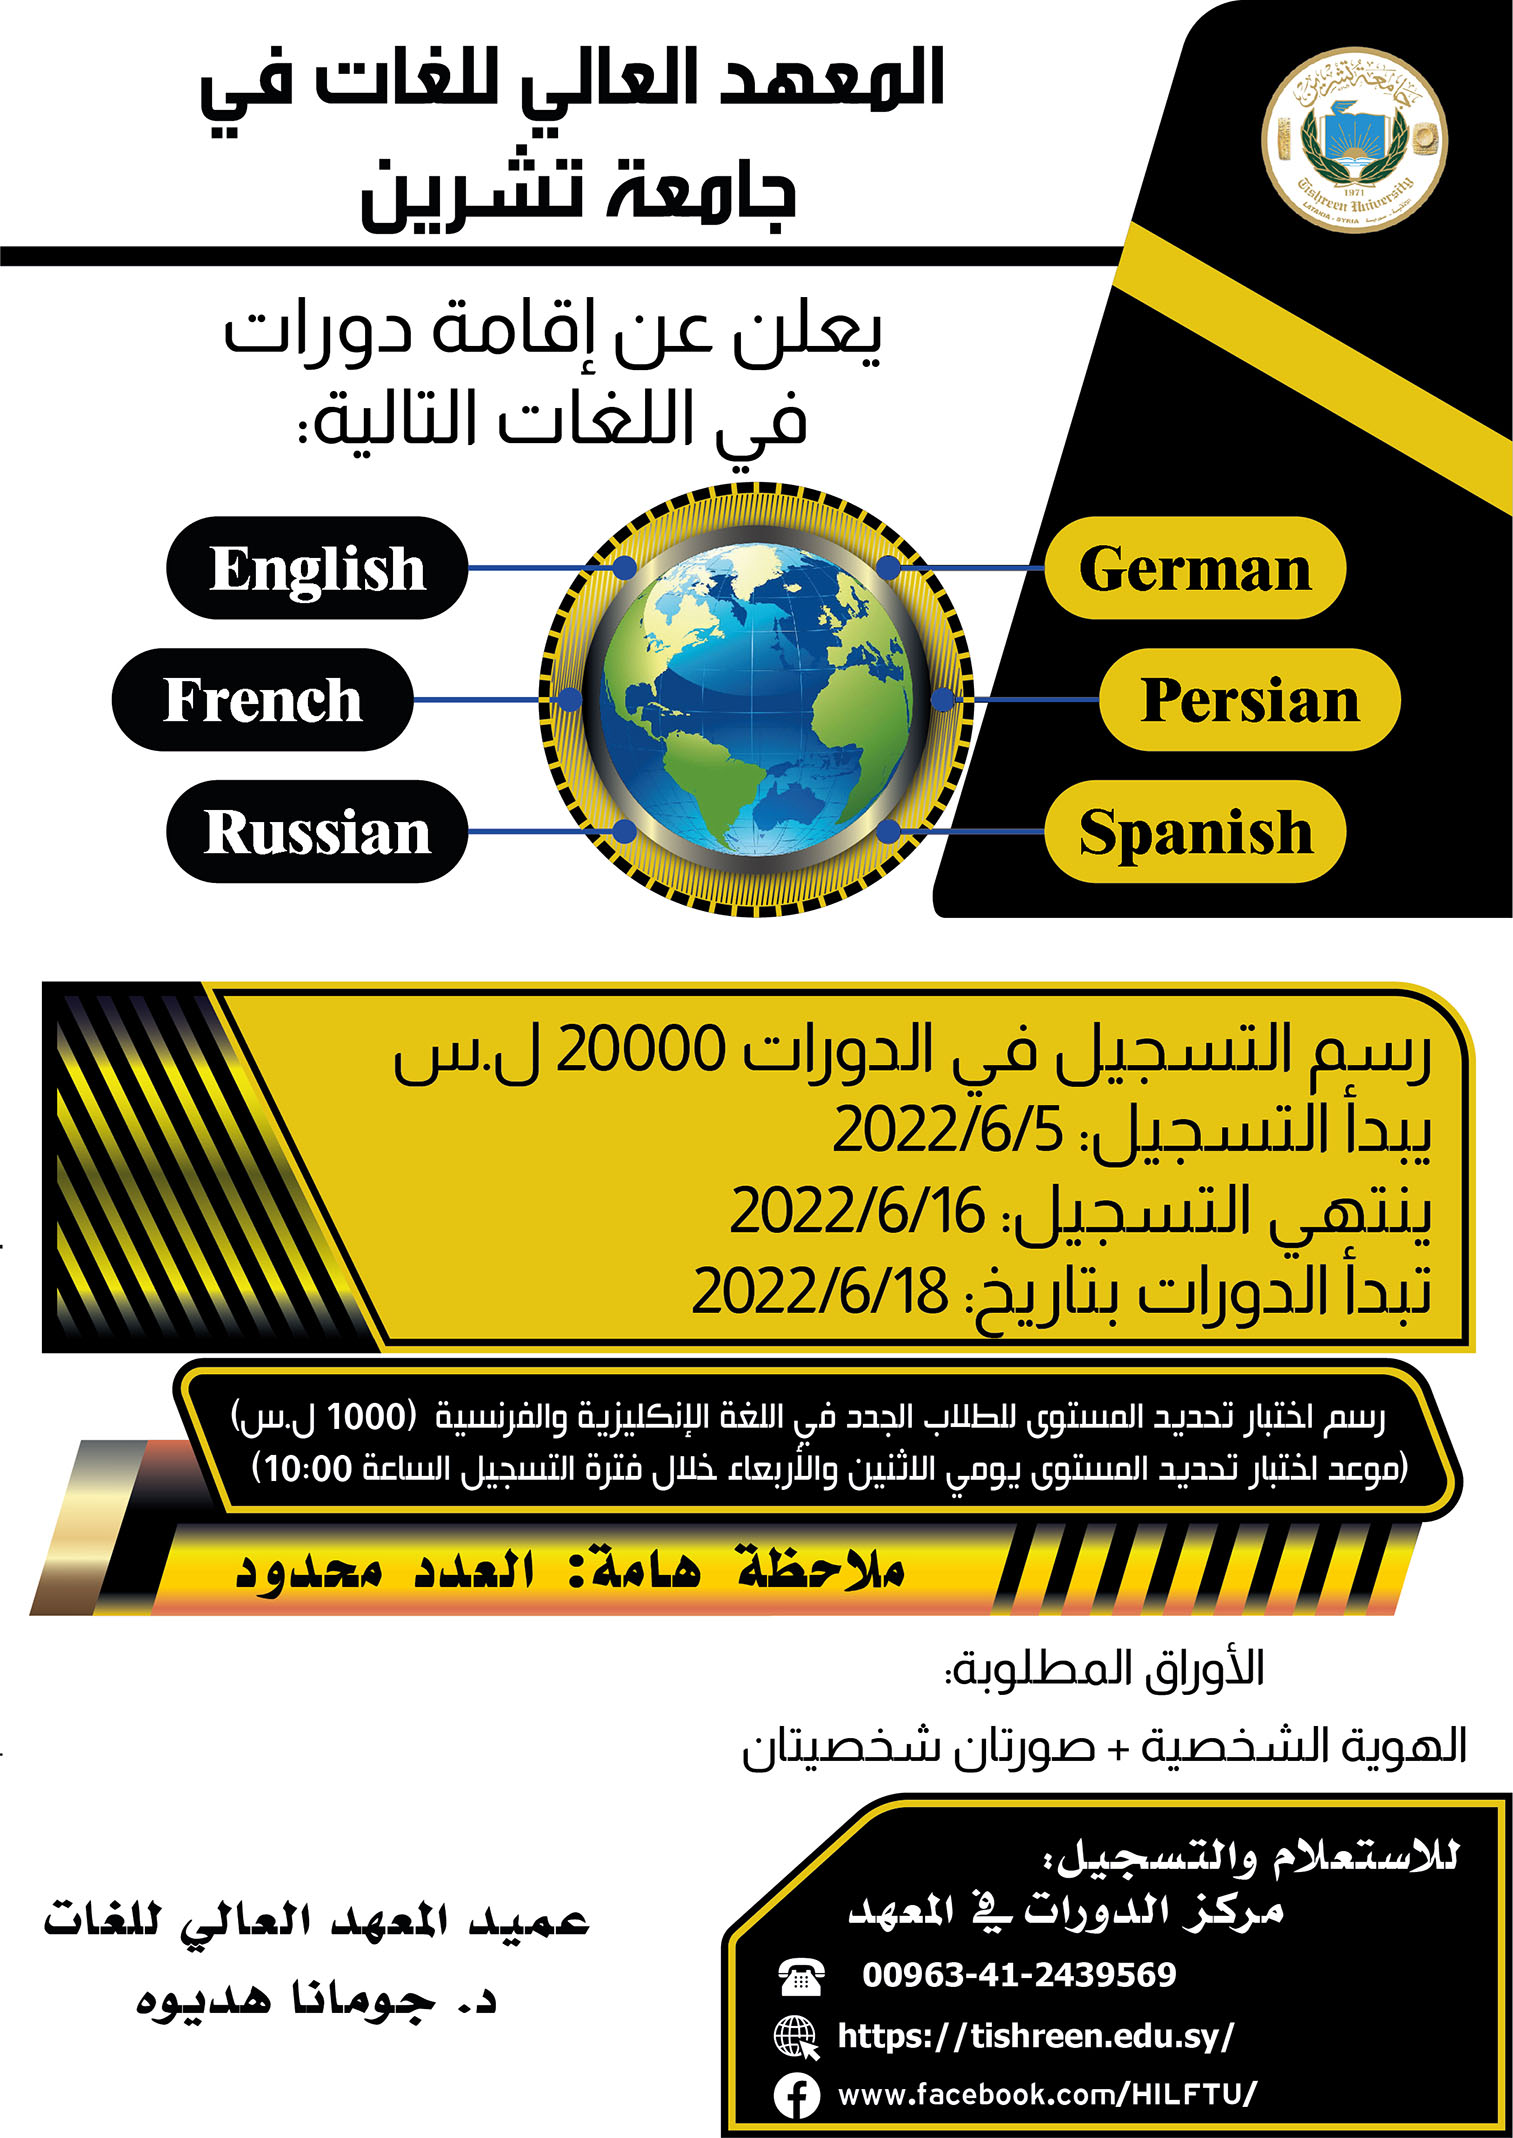 المعهد العالي للغات يعلن عن موعد التسجيل لدورات اللغات الأجنبية التي ستبدأ بتاريخ 18-06-2022